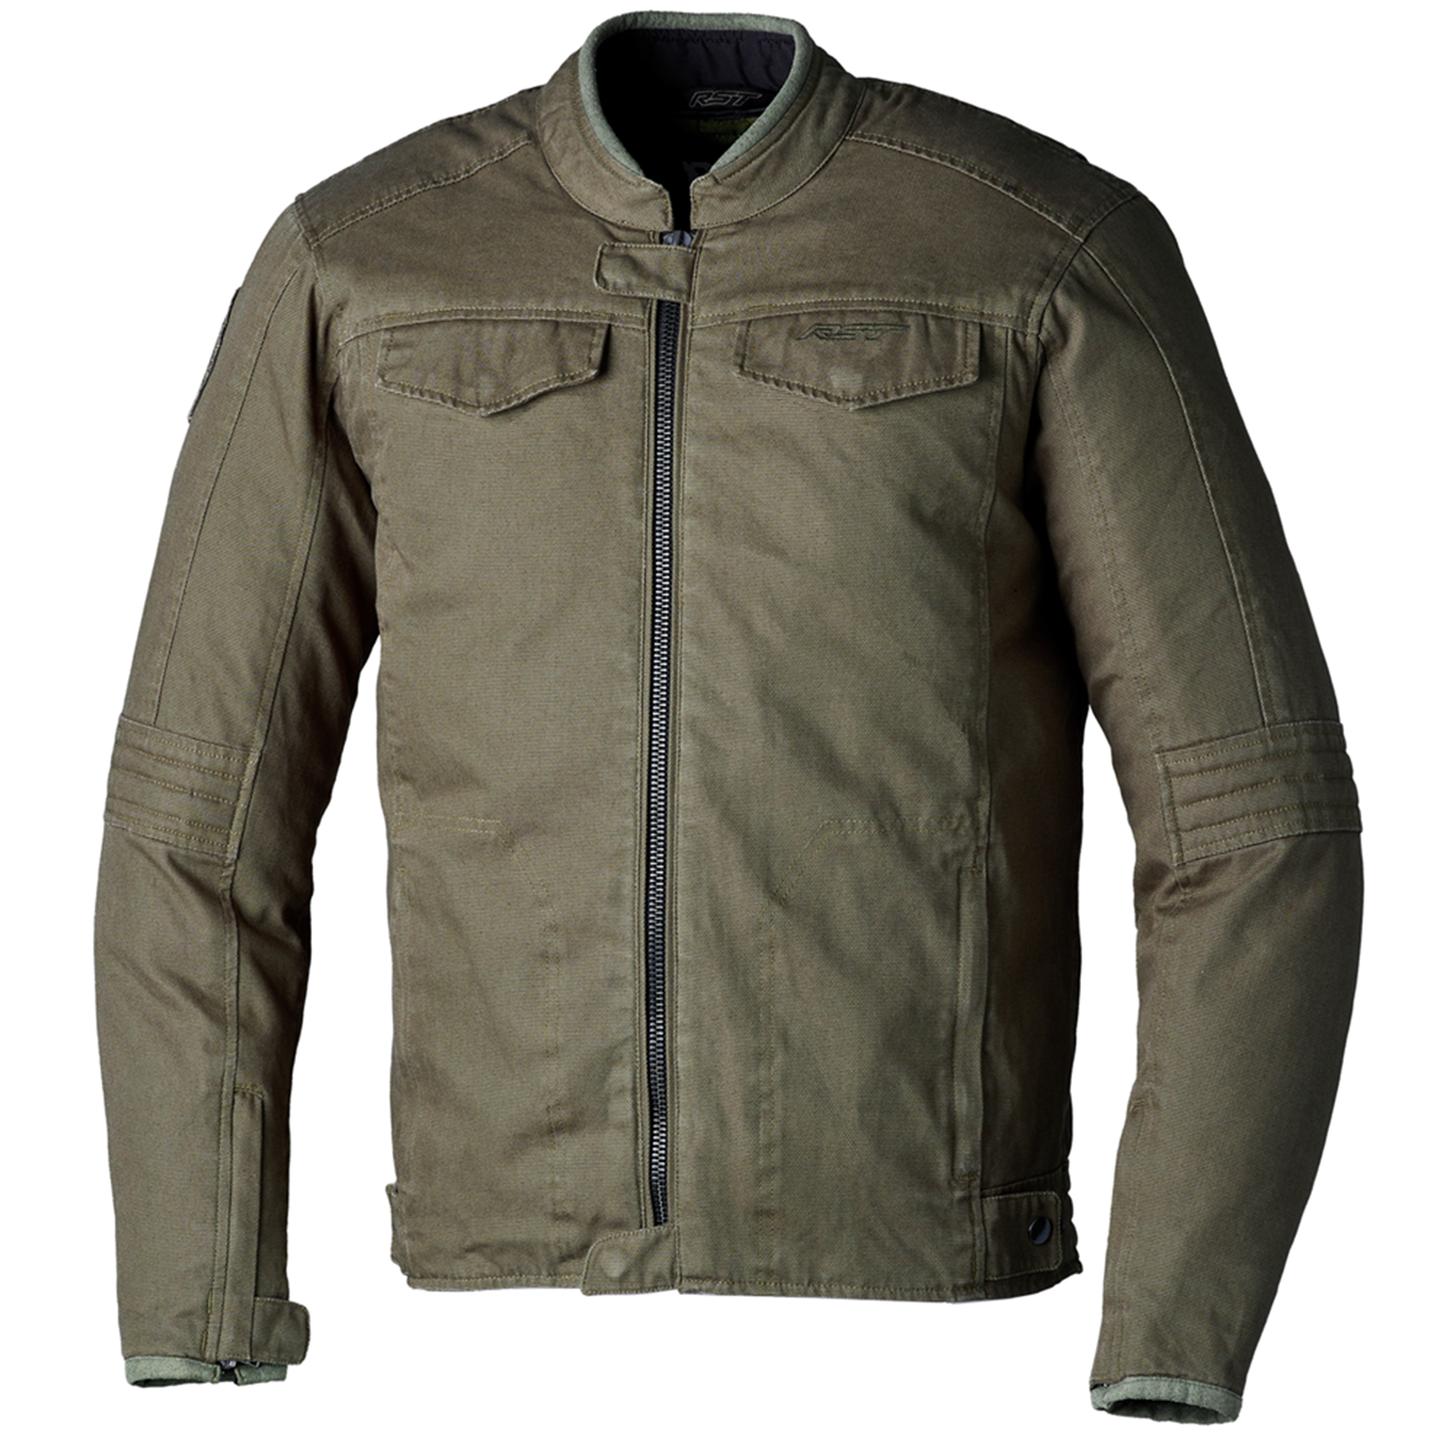 RST IOM TT Crosby 2 Textile Jacket - Olive